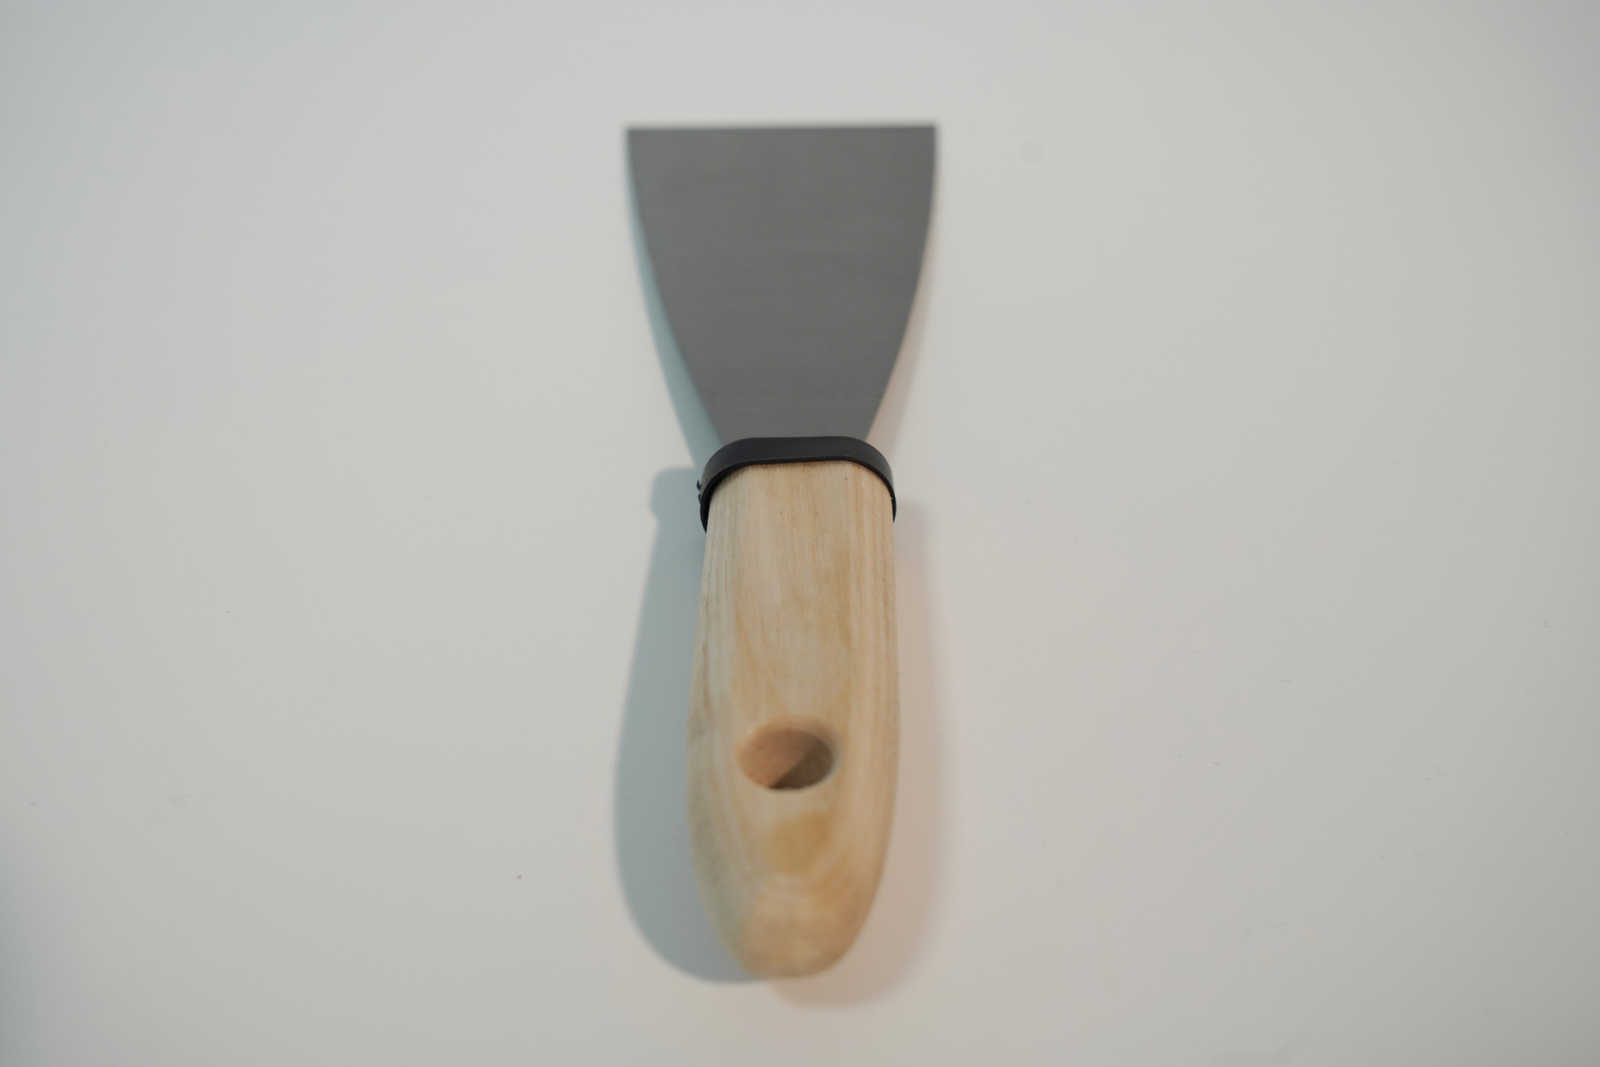             Spatola da pittore 60 mm con lama flessibile in acciaio e manico in legno
        